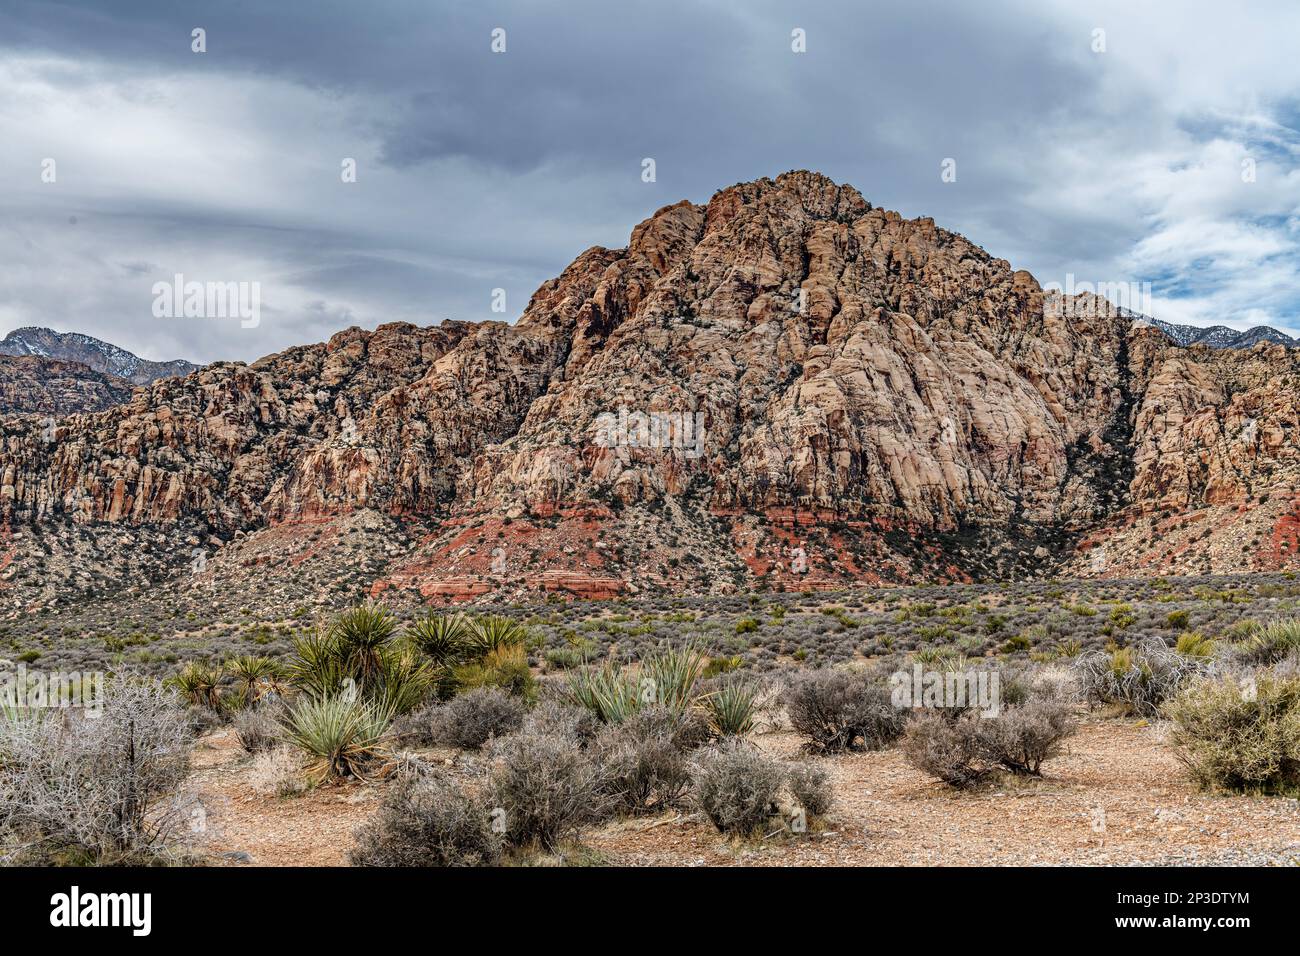 Une belle scène aride, sauvage et montagneuse dans le désert de Red Rock Canyon à Las Vegas, Nevada, où les familles voyagent pour l'aventure. Banque D'Images